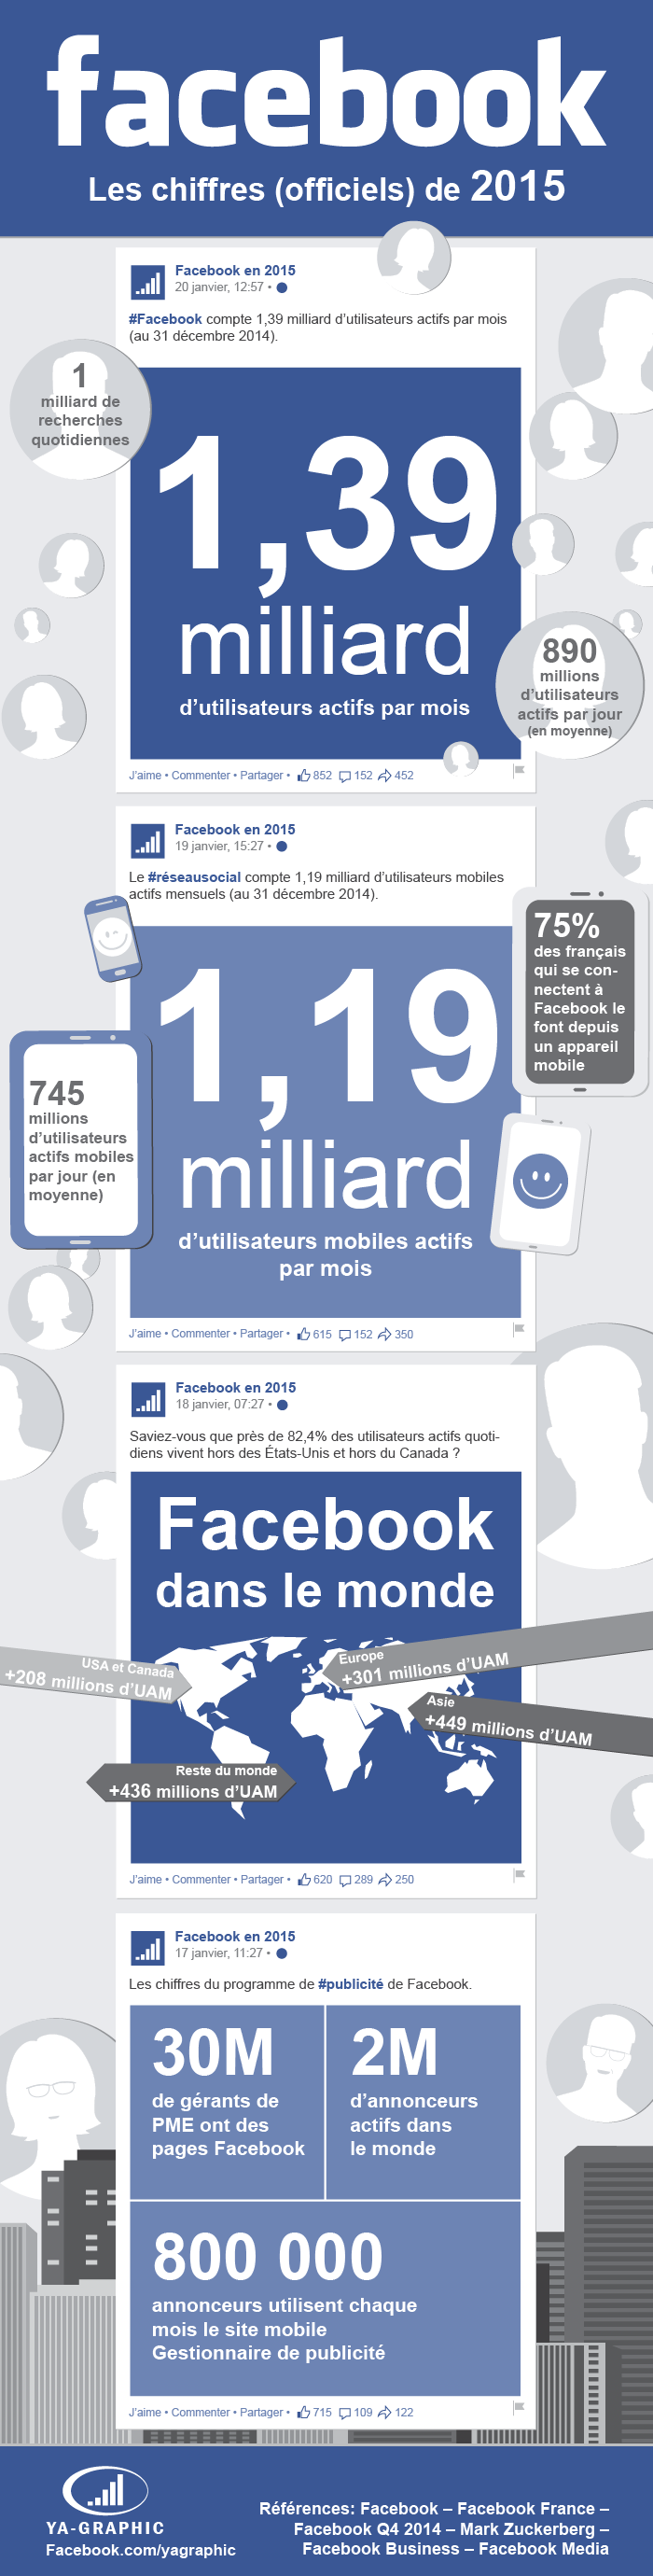 Infographie Facebook : Chiffres réseau social Facebook 2015